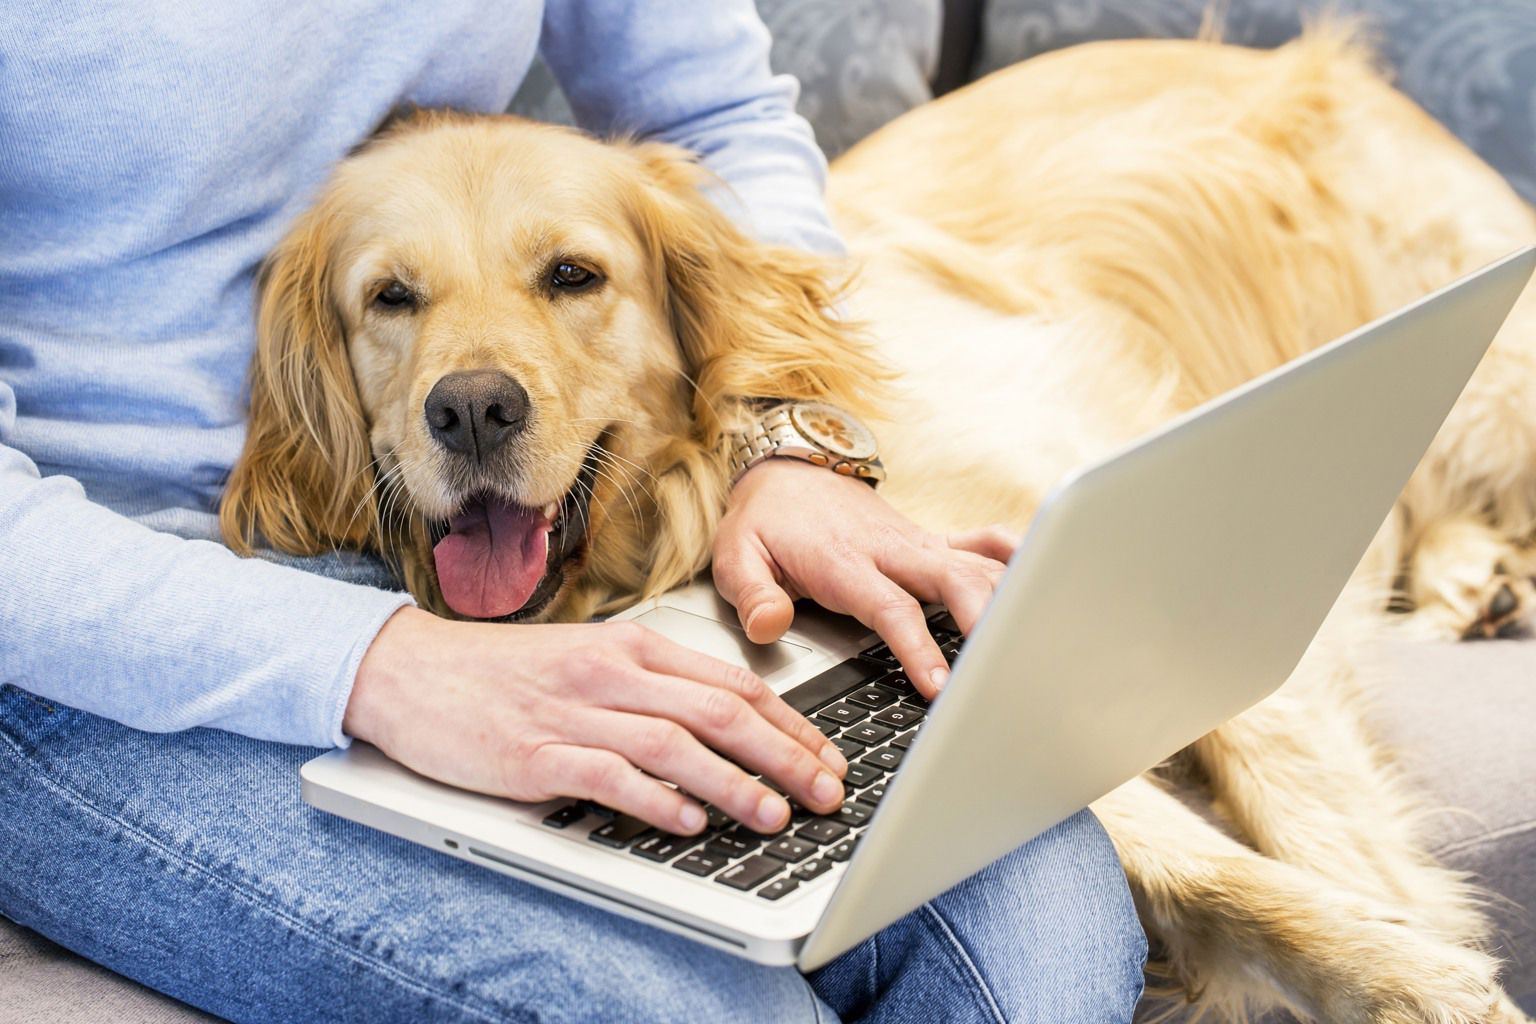 Kvinna sitter och skriver på laptop med en hund i sitt knä